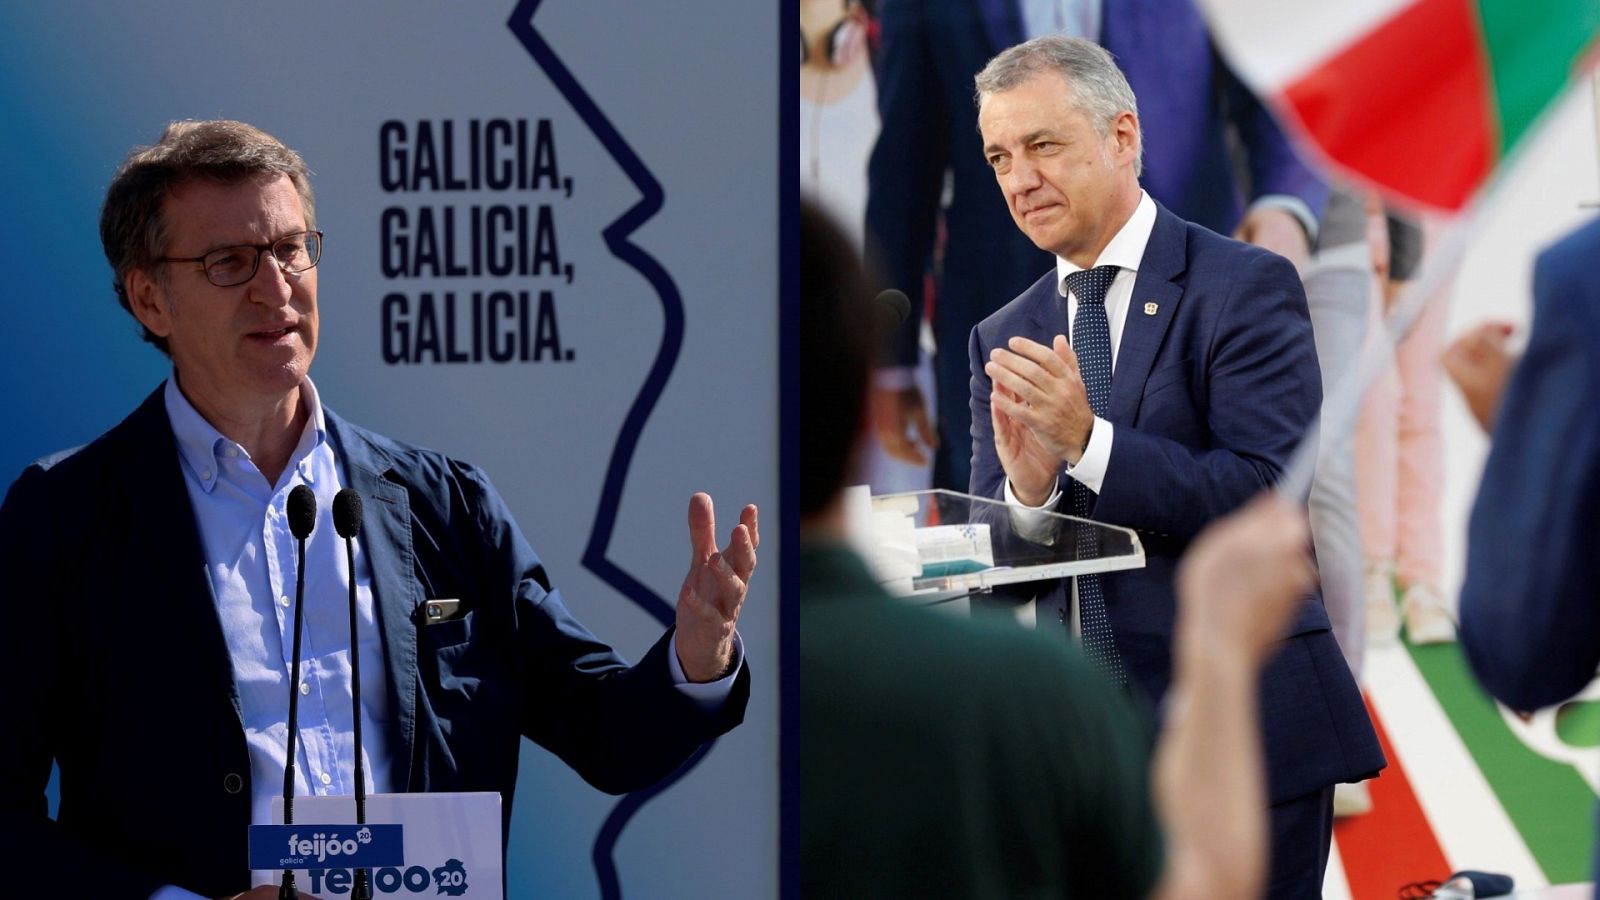 Feijóo y Urkullu, los favoritos a la reelección como presidentes autonómicos en Galicia y País Vasco